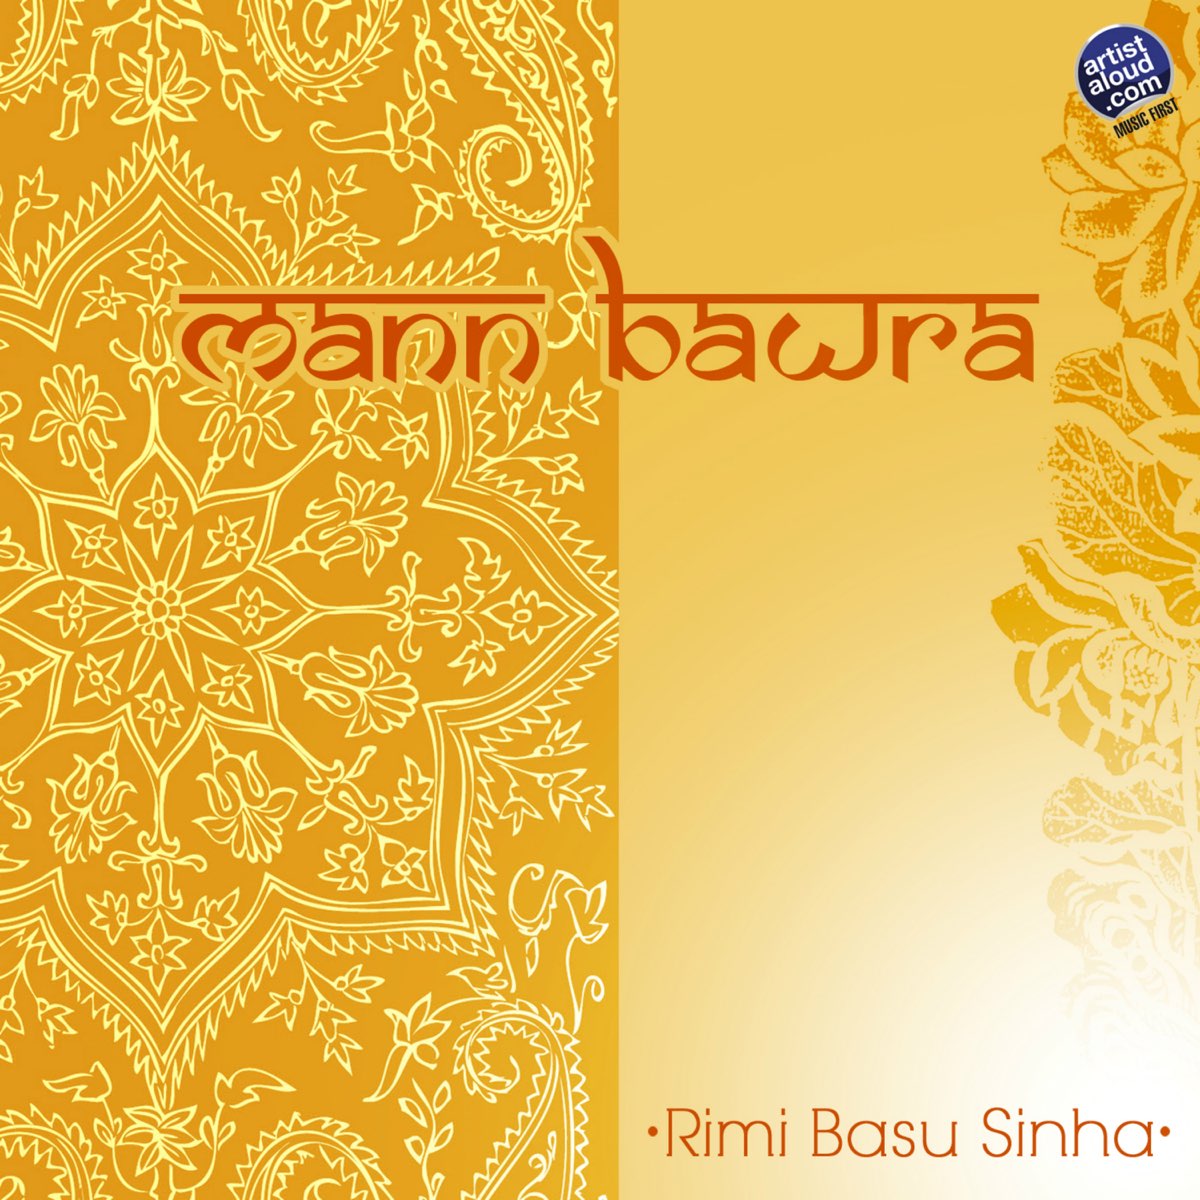 Mann Bawra - EP by Rimi Basu Sinha on Apple Music